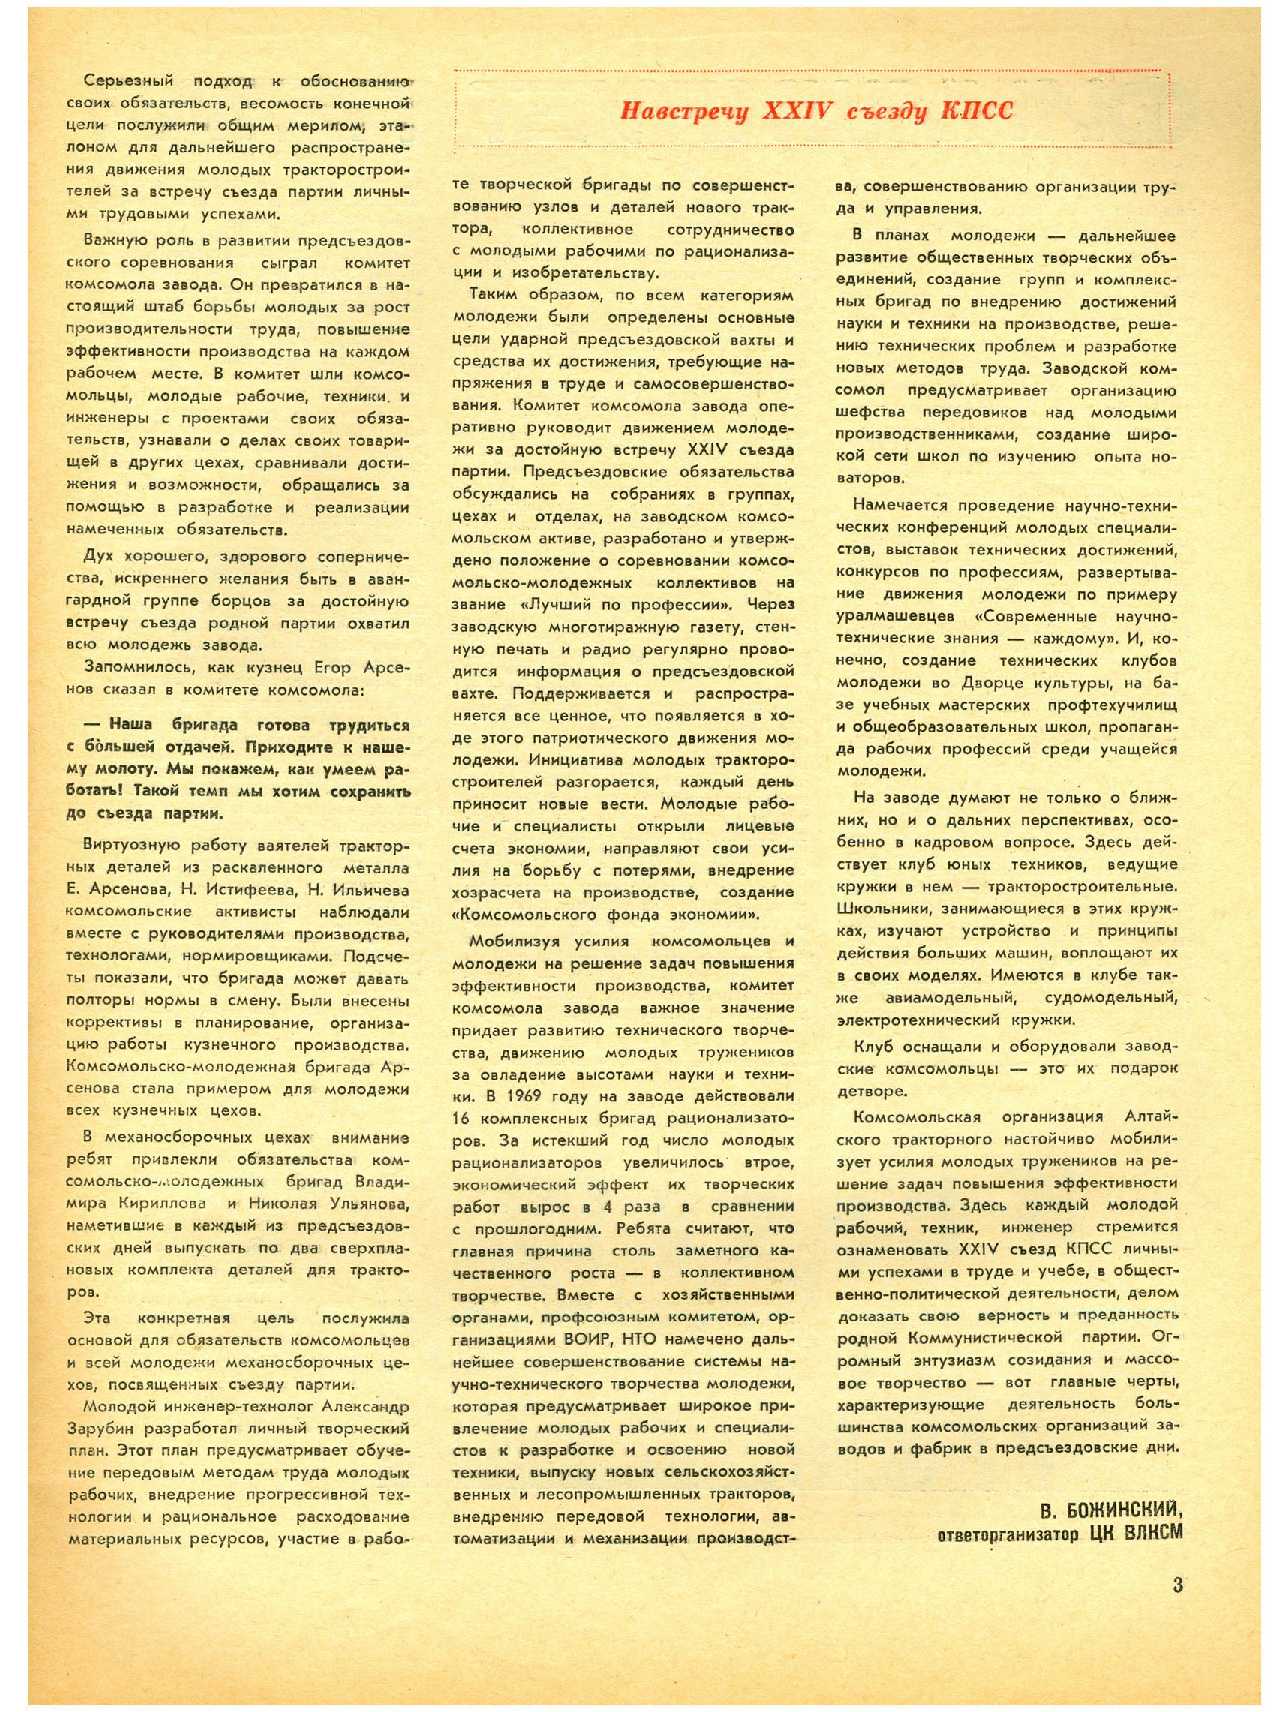 МК 12, 1970, 3 c.